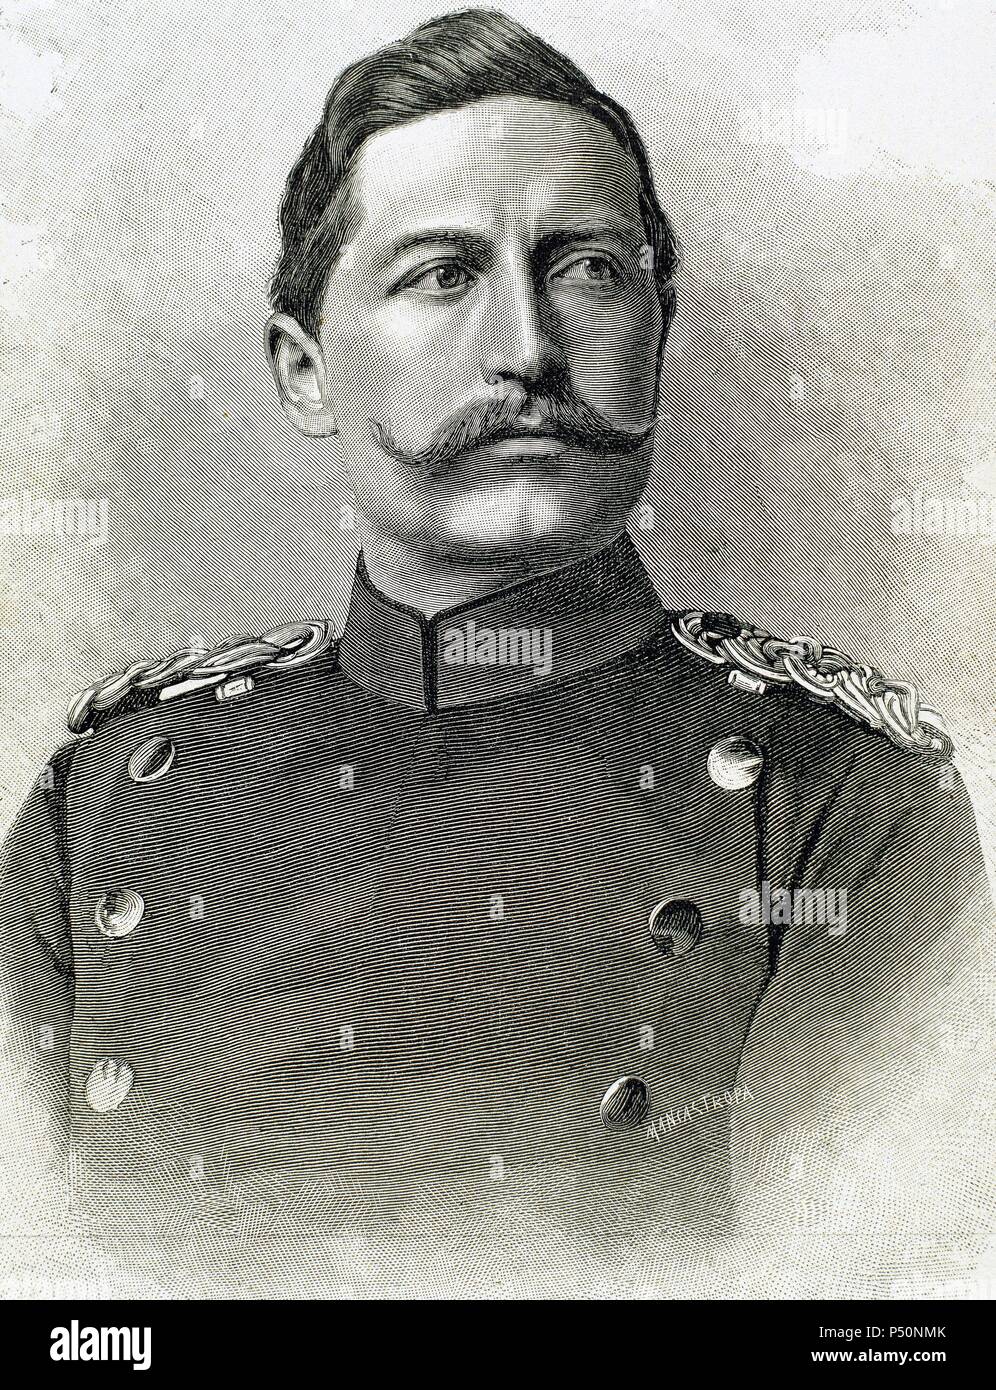 Wilhelm II de Alemania (Potsdam ,1859-Doorn, 1941). El rey de Prusia y emperador alemán (1888-1918), hijo y sucesor de Federico III. Grabado. Foto de stock